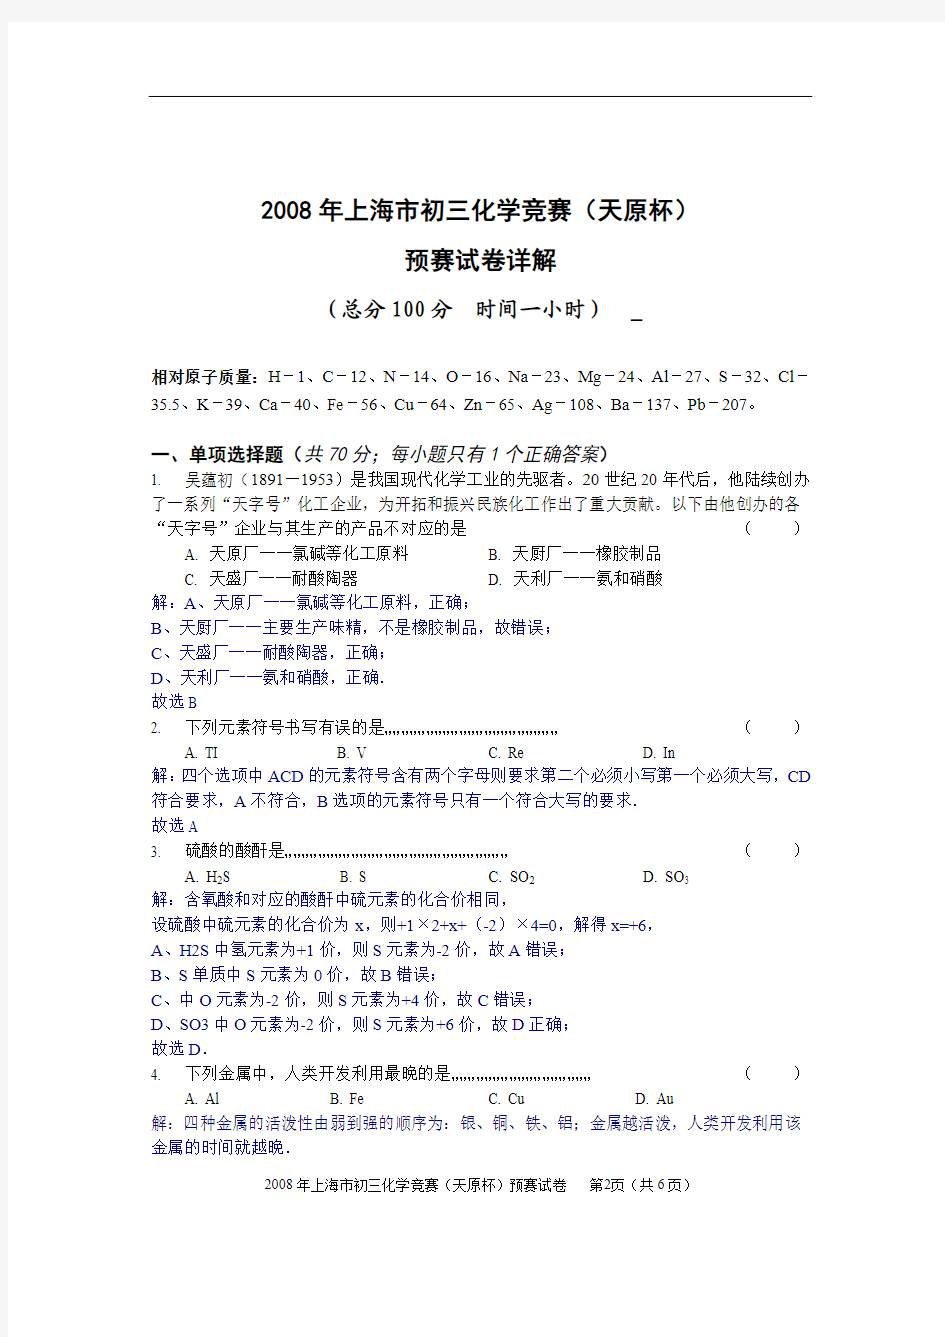 详解——2008年上海市初三化学竞赛(天原杯)预赛试卷